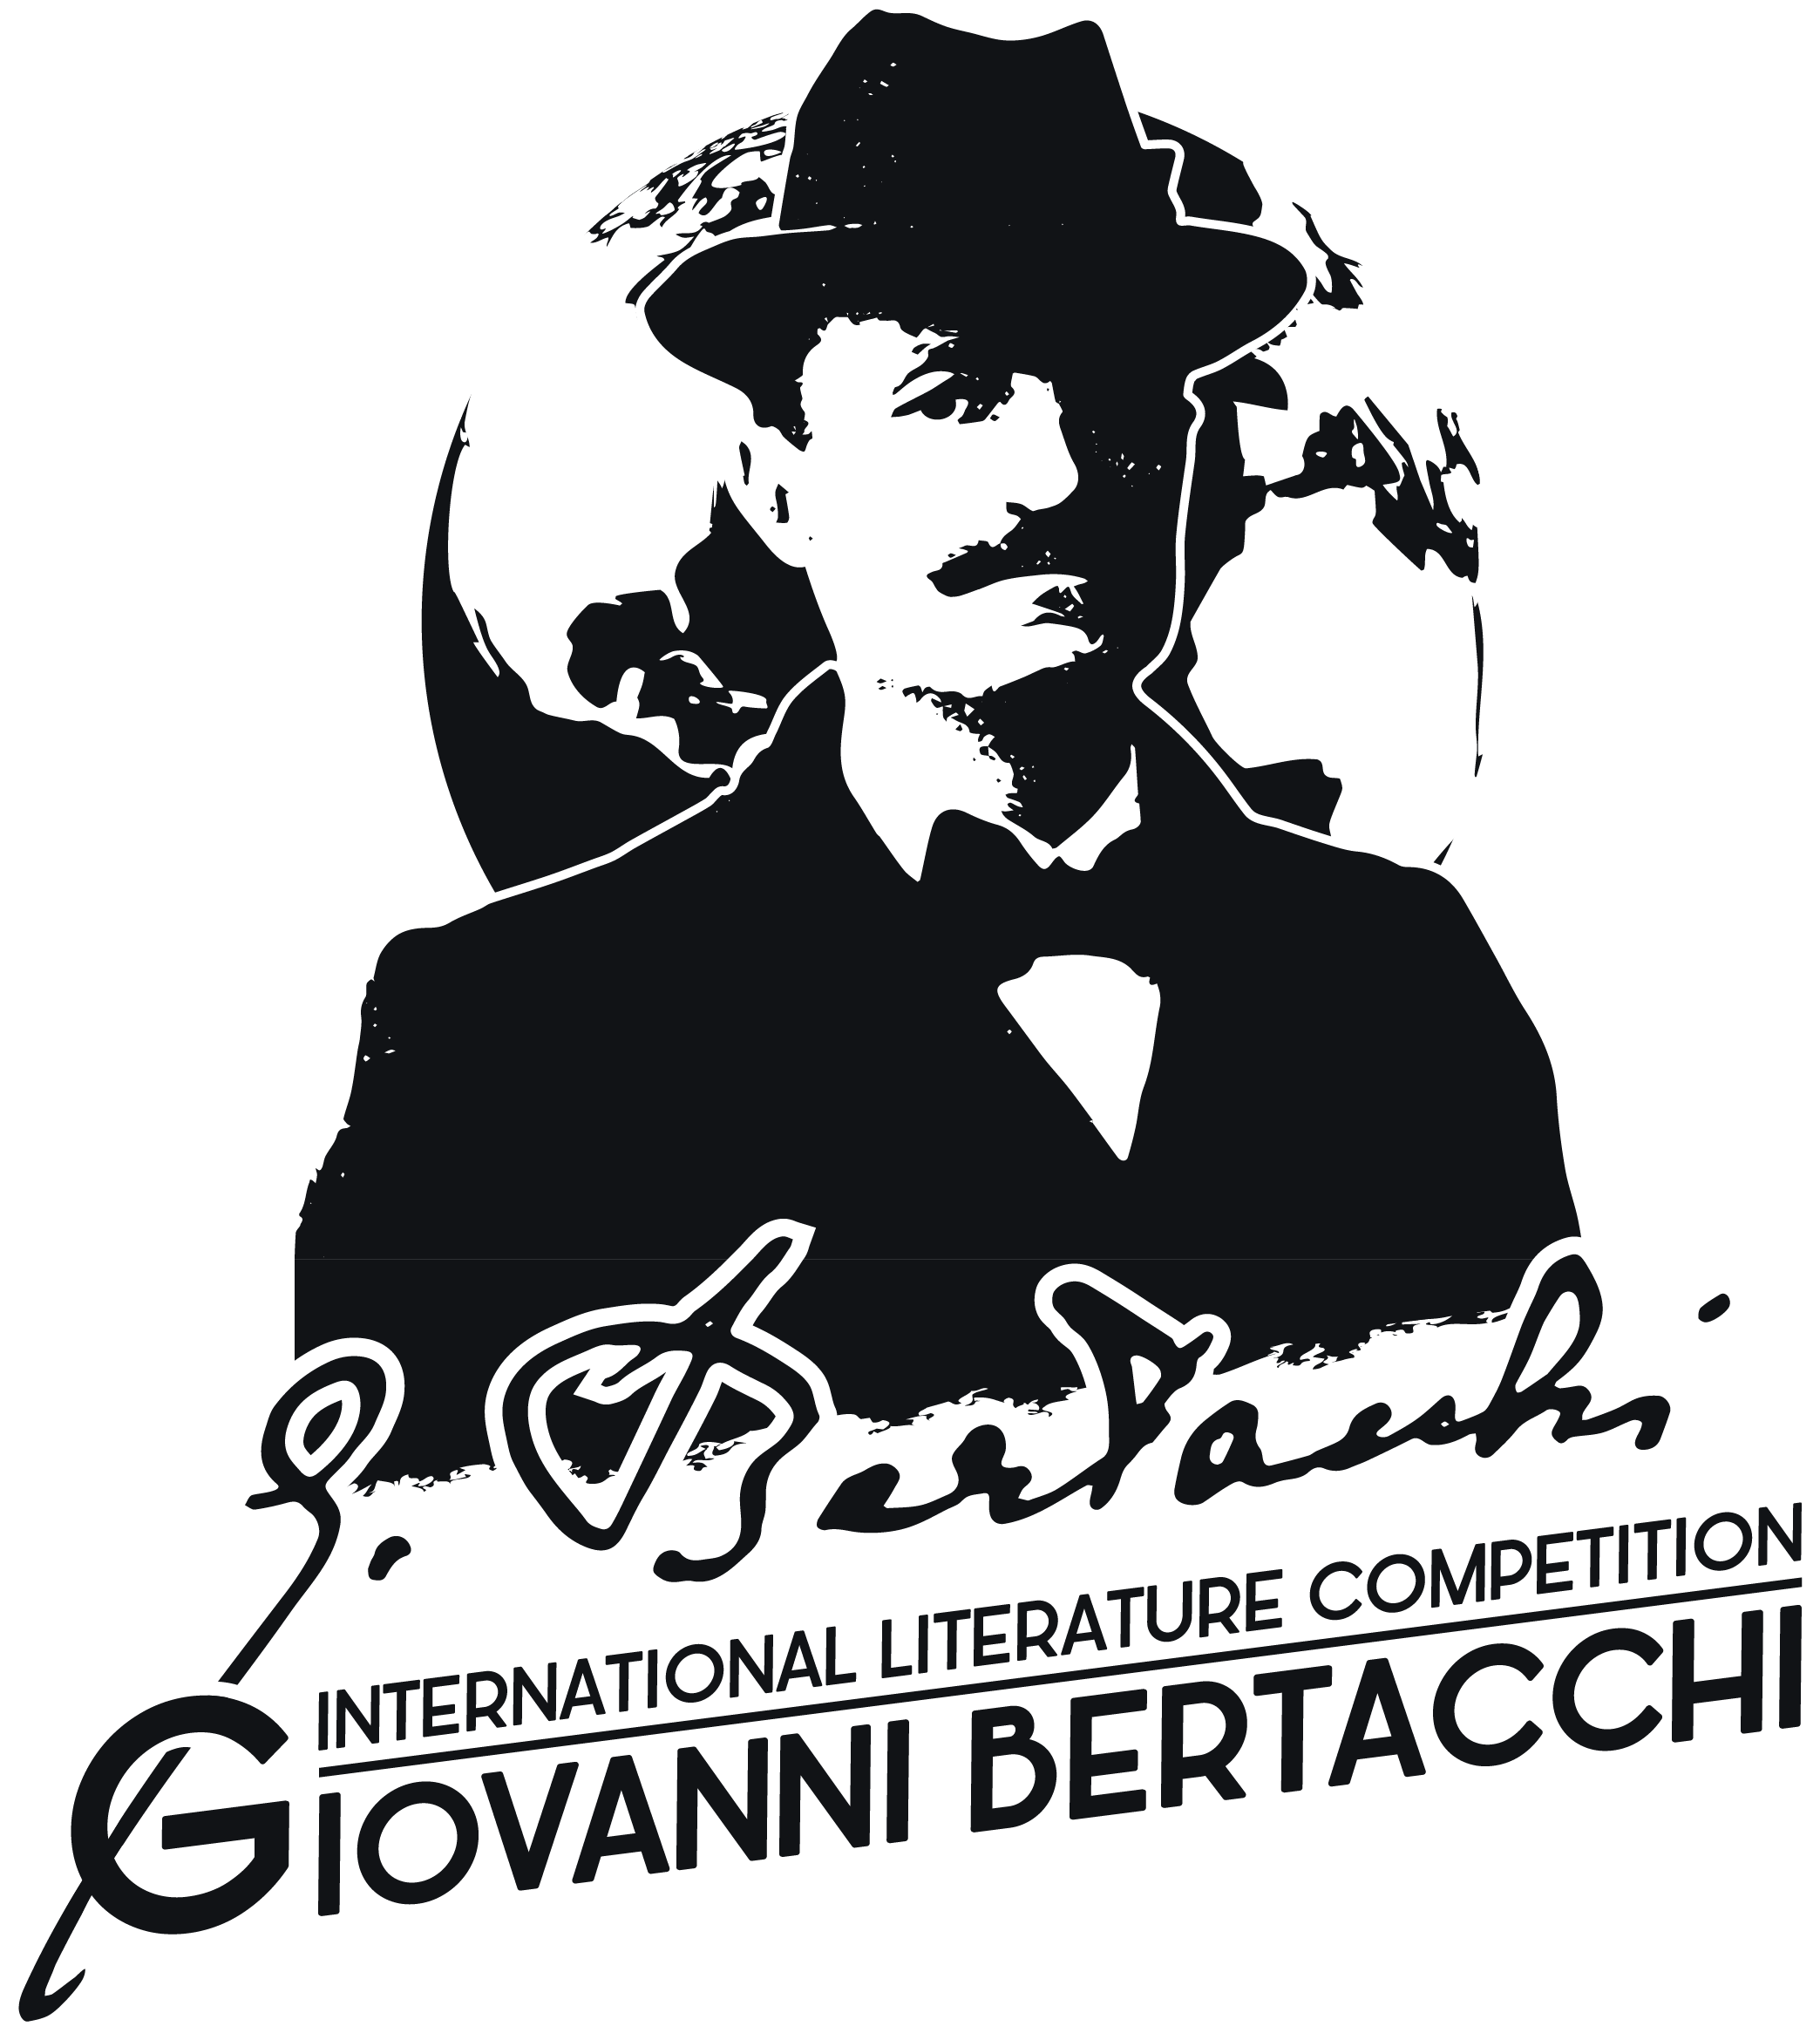 X Premio internazionale di letteratura Giovanni Bertacchi